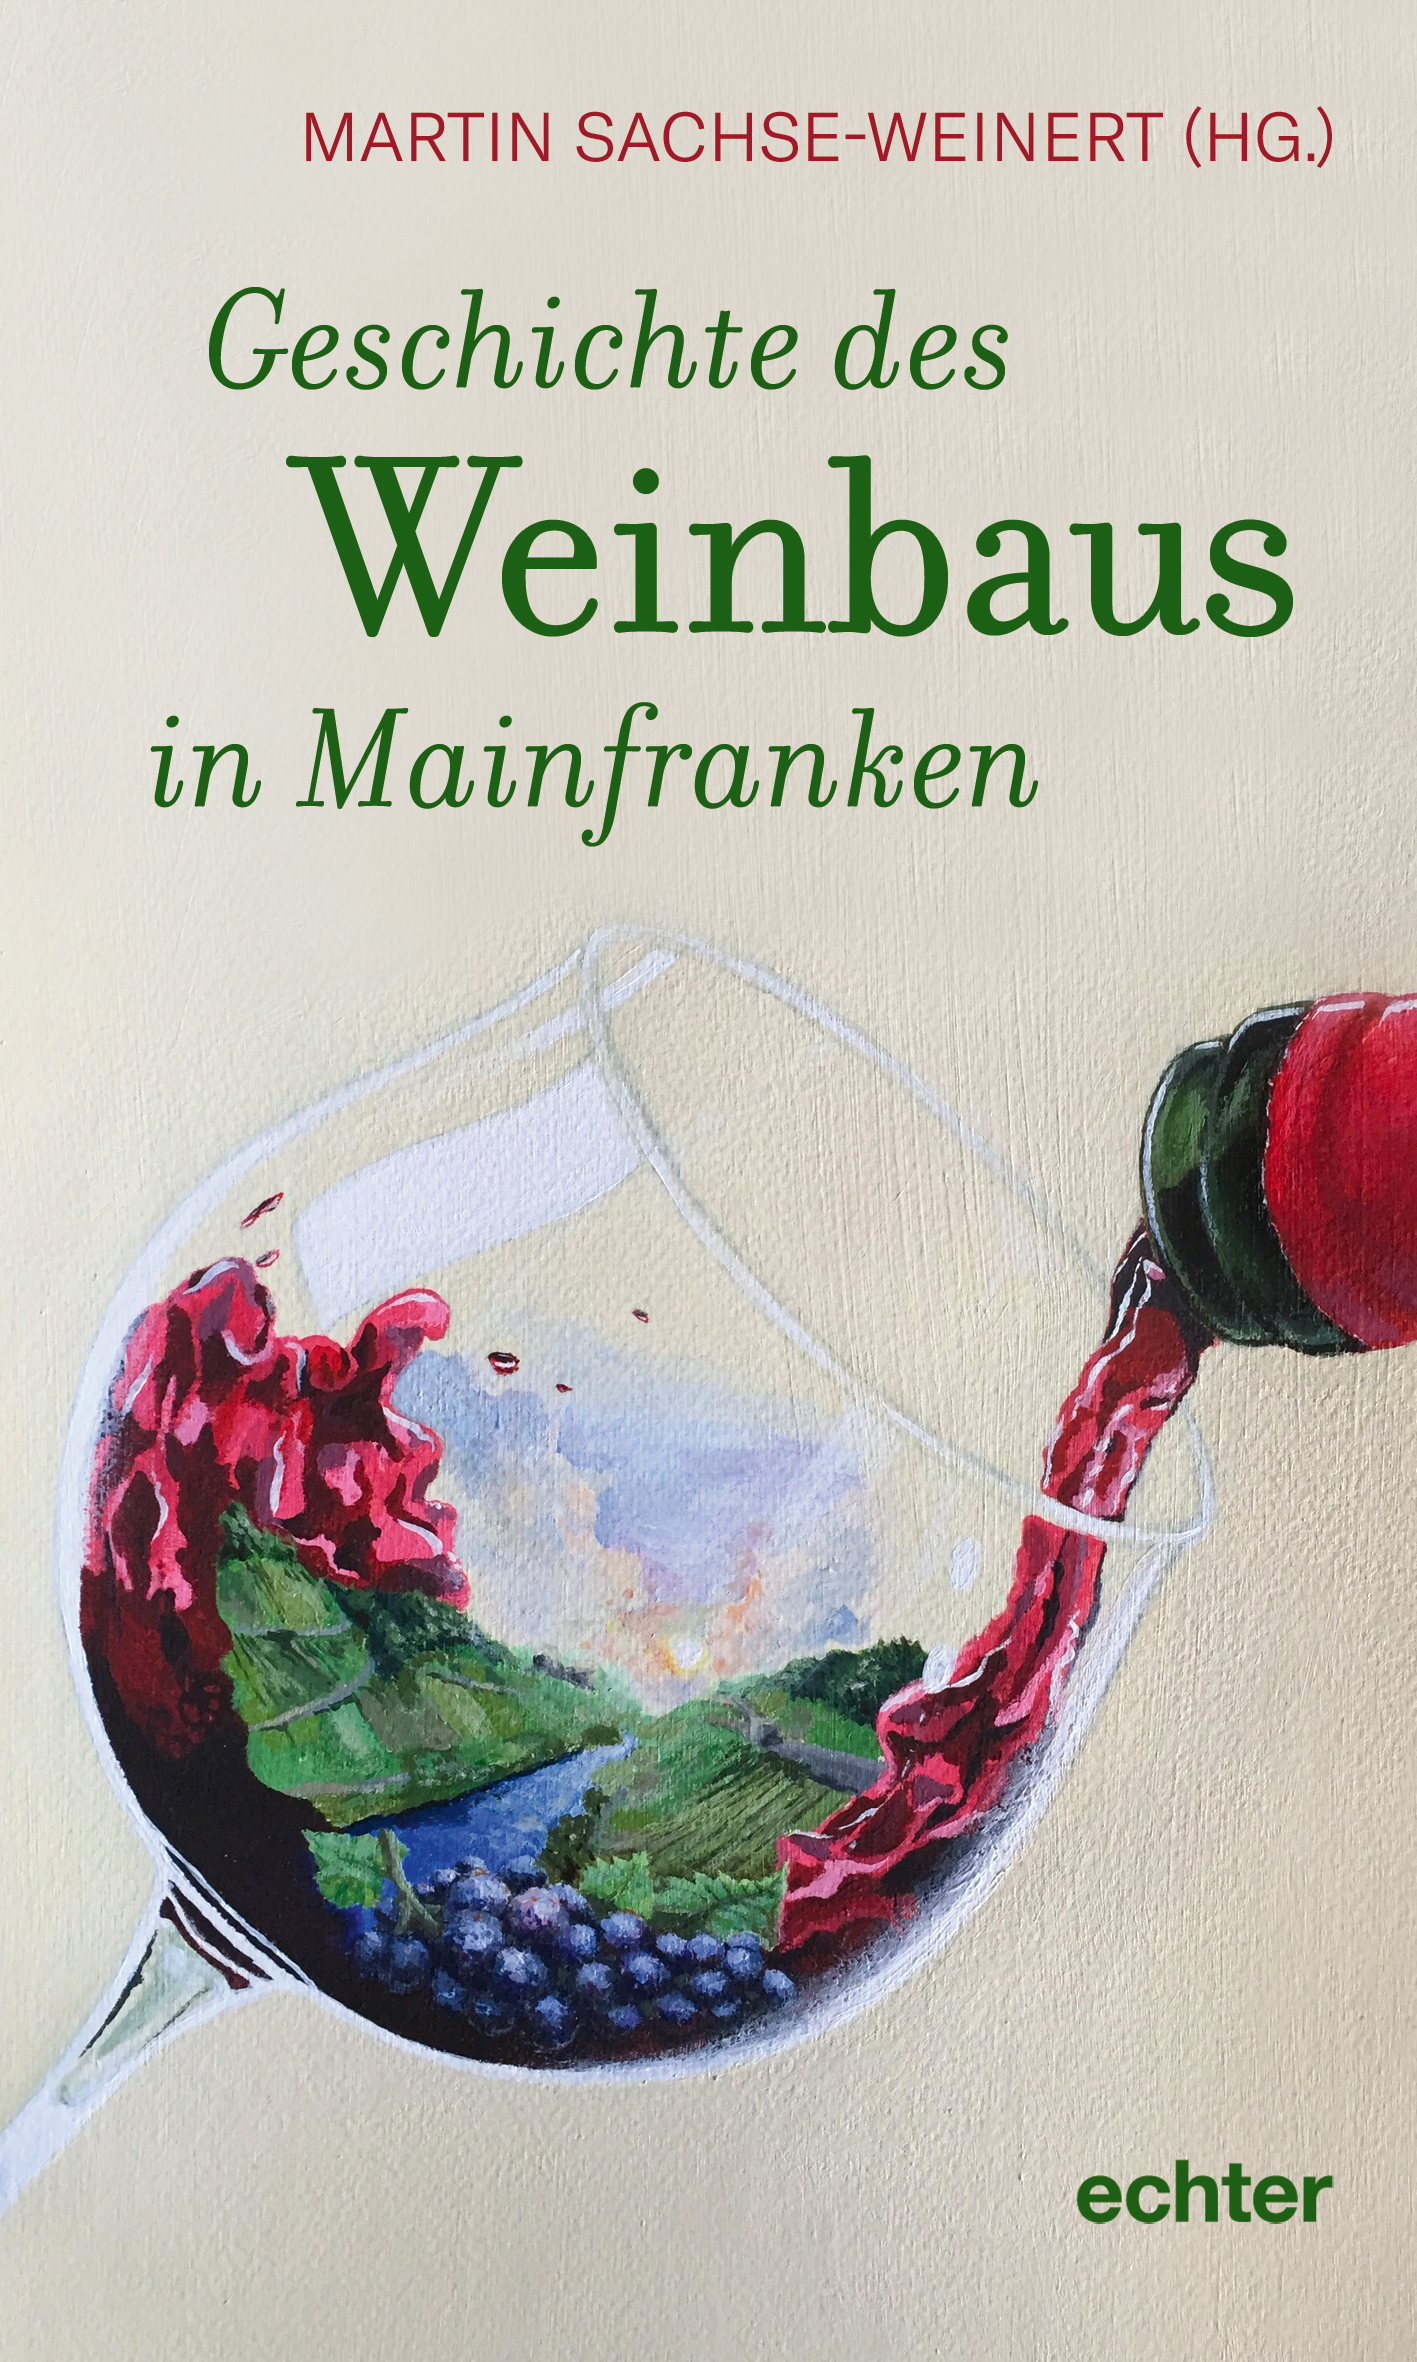 Geschichte des Weinbaus in Mainfranken